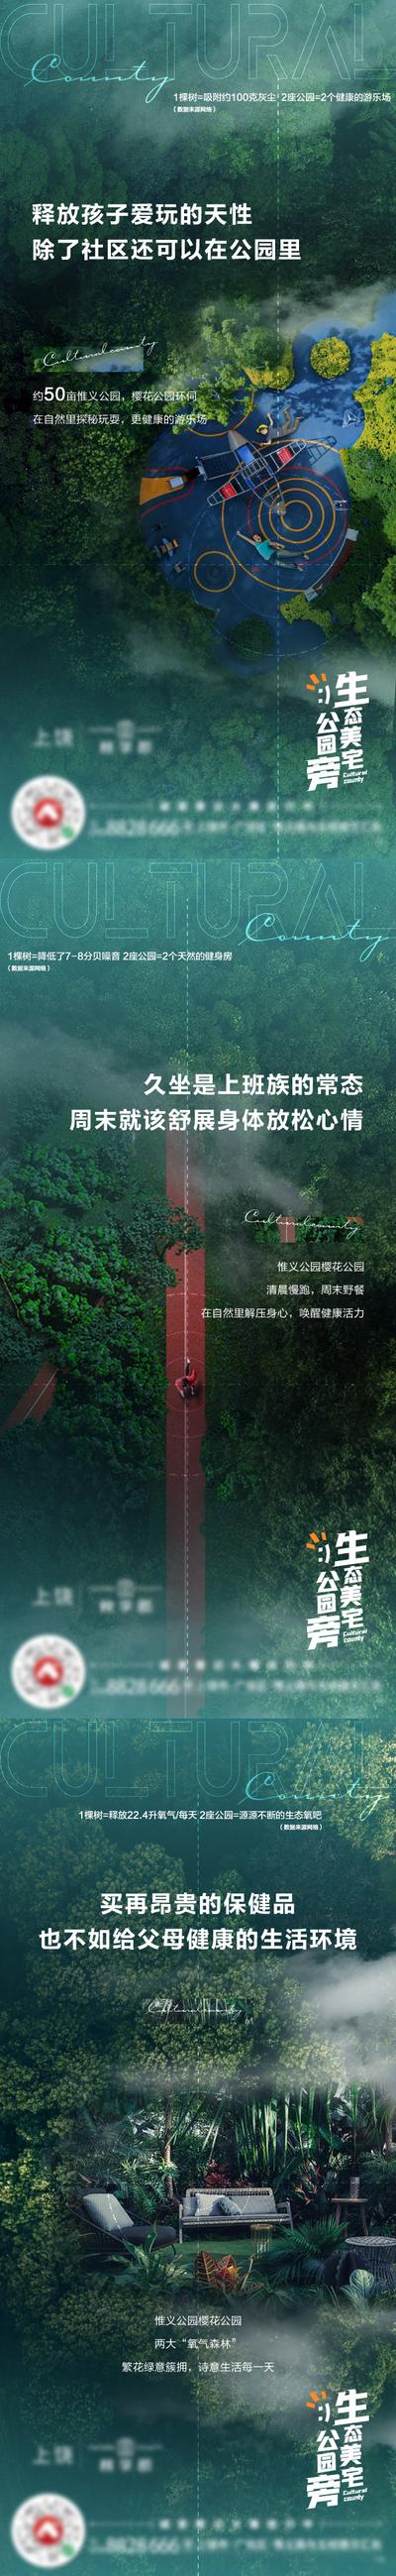 南门网 广告 海报 地产 公园 园林 配套 价值点 系列